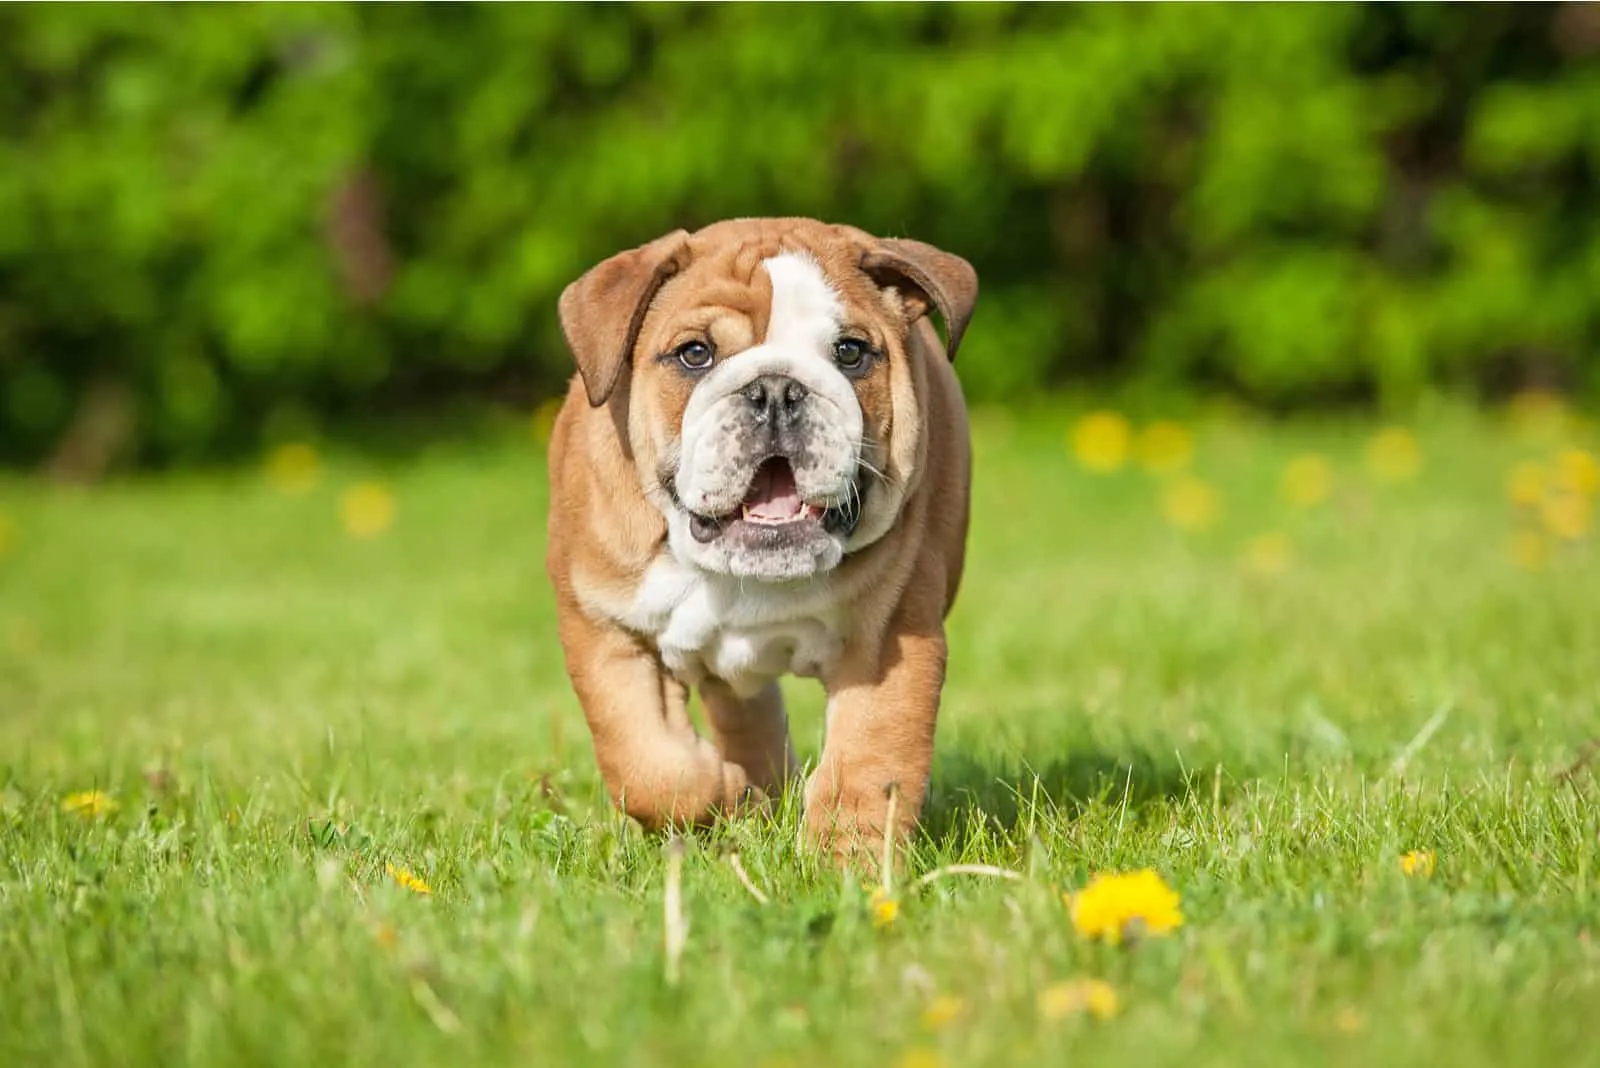 English bulldog puppy running